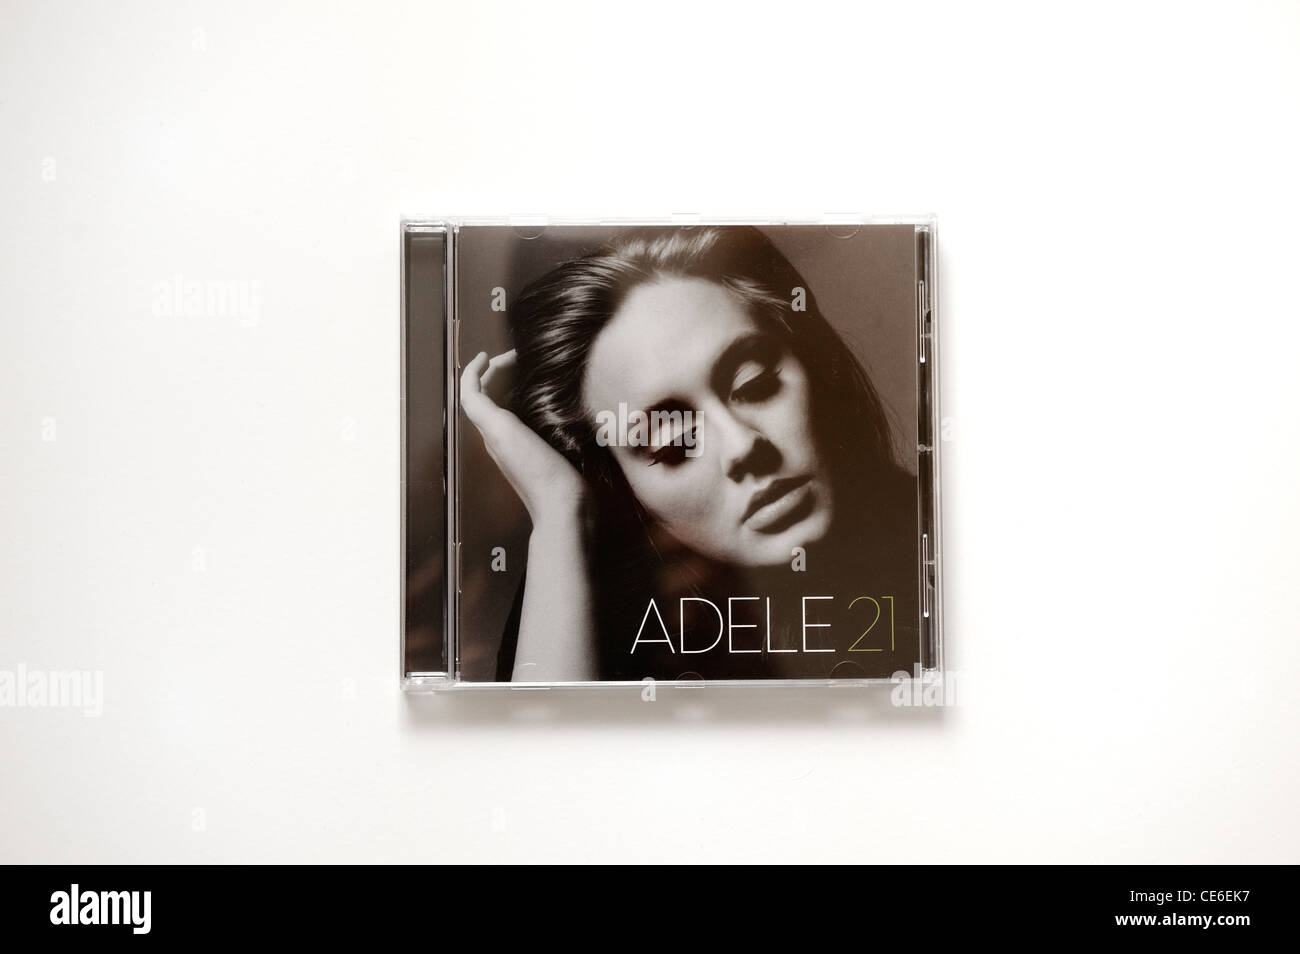 Adele hugo. Adele 21 обложка без надписи. Adele "25, CD". Adele 21 Cover. Adele CD food.